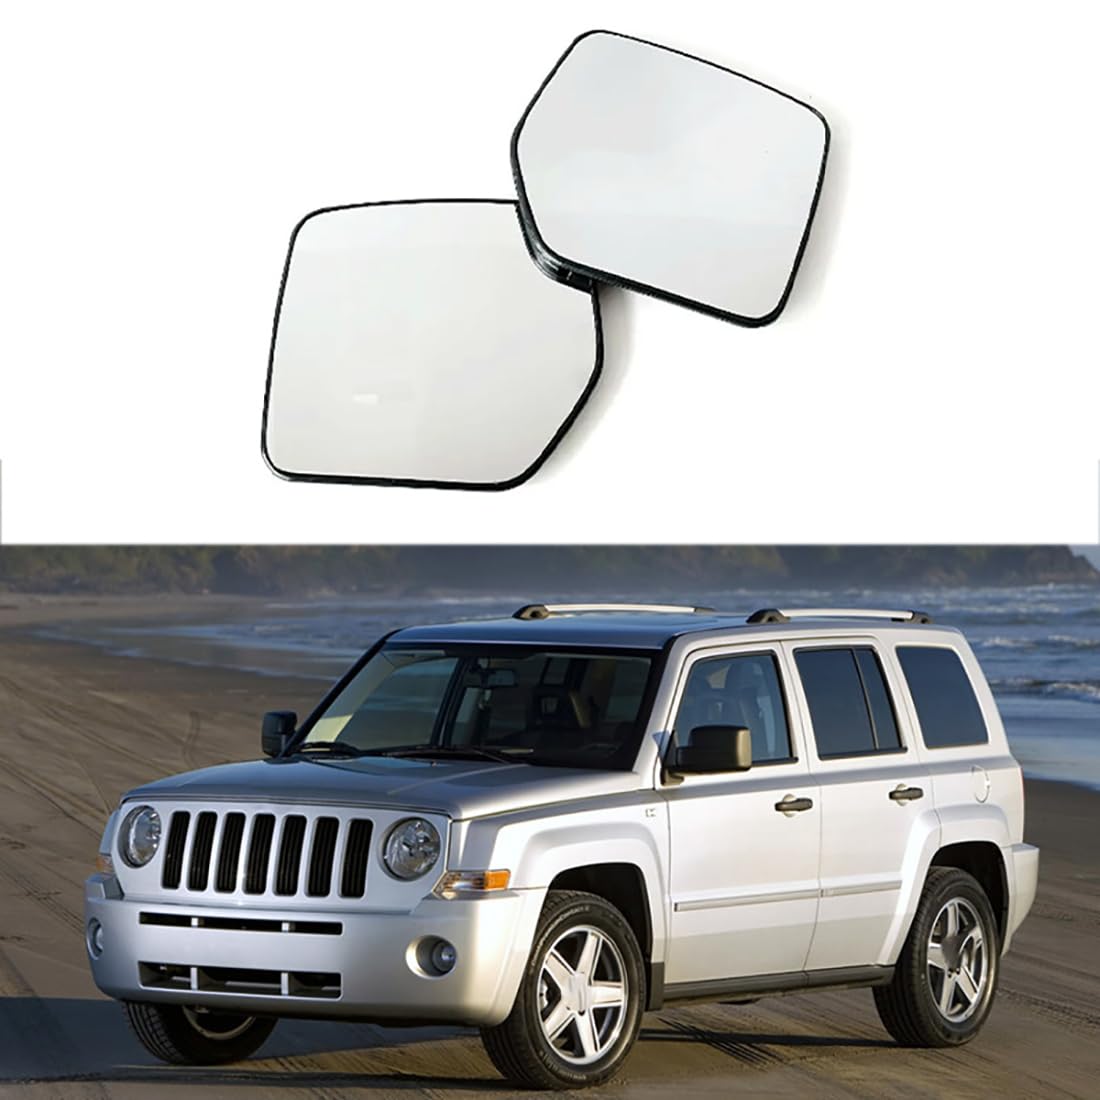 Austauschbarer Auto-Außenspiegel aus Beheizbarem Glas für Jeep Liberty 2008-2012,beheizbarer Rückspiegel für Fahrer und Beifahrer Links/rechts,B-Right von YujieNB